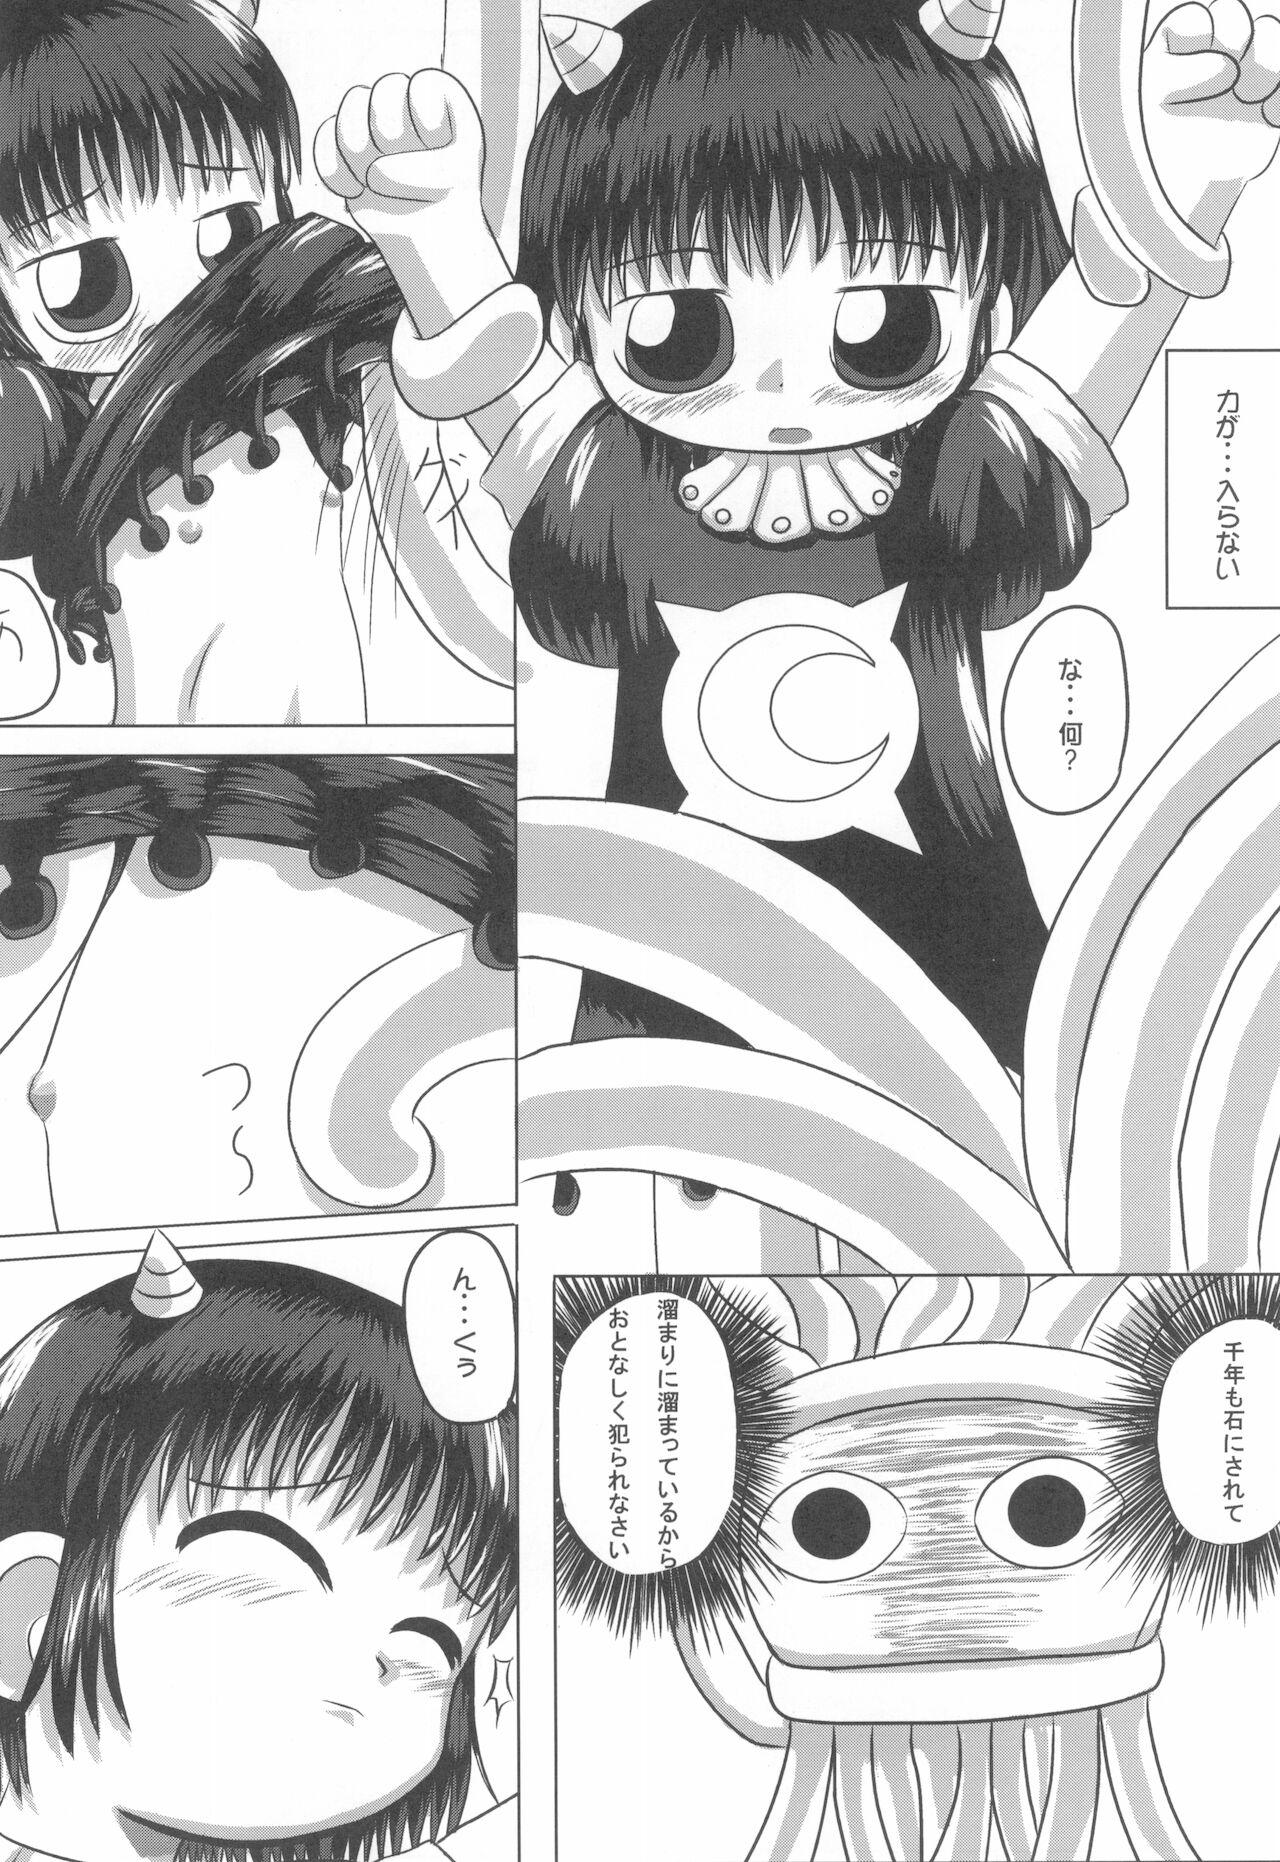 Bubblebutt Mamono Kakuchou Sheet LEVEL:1 - Zatch bell | konjiki no gash 18 Year Old Porn - Page 4